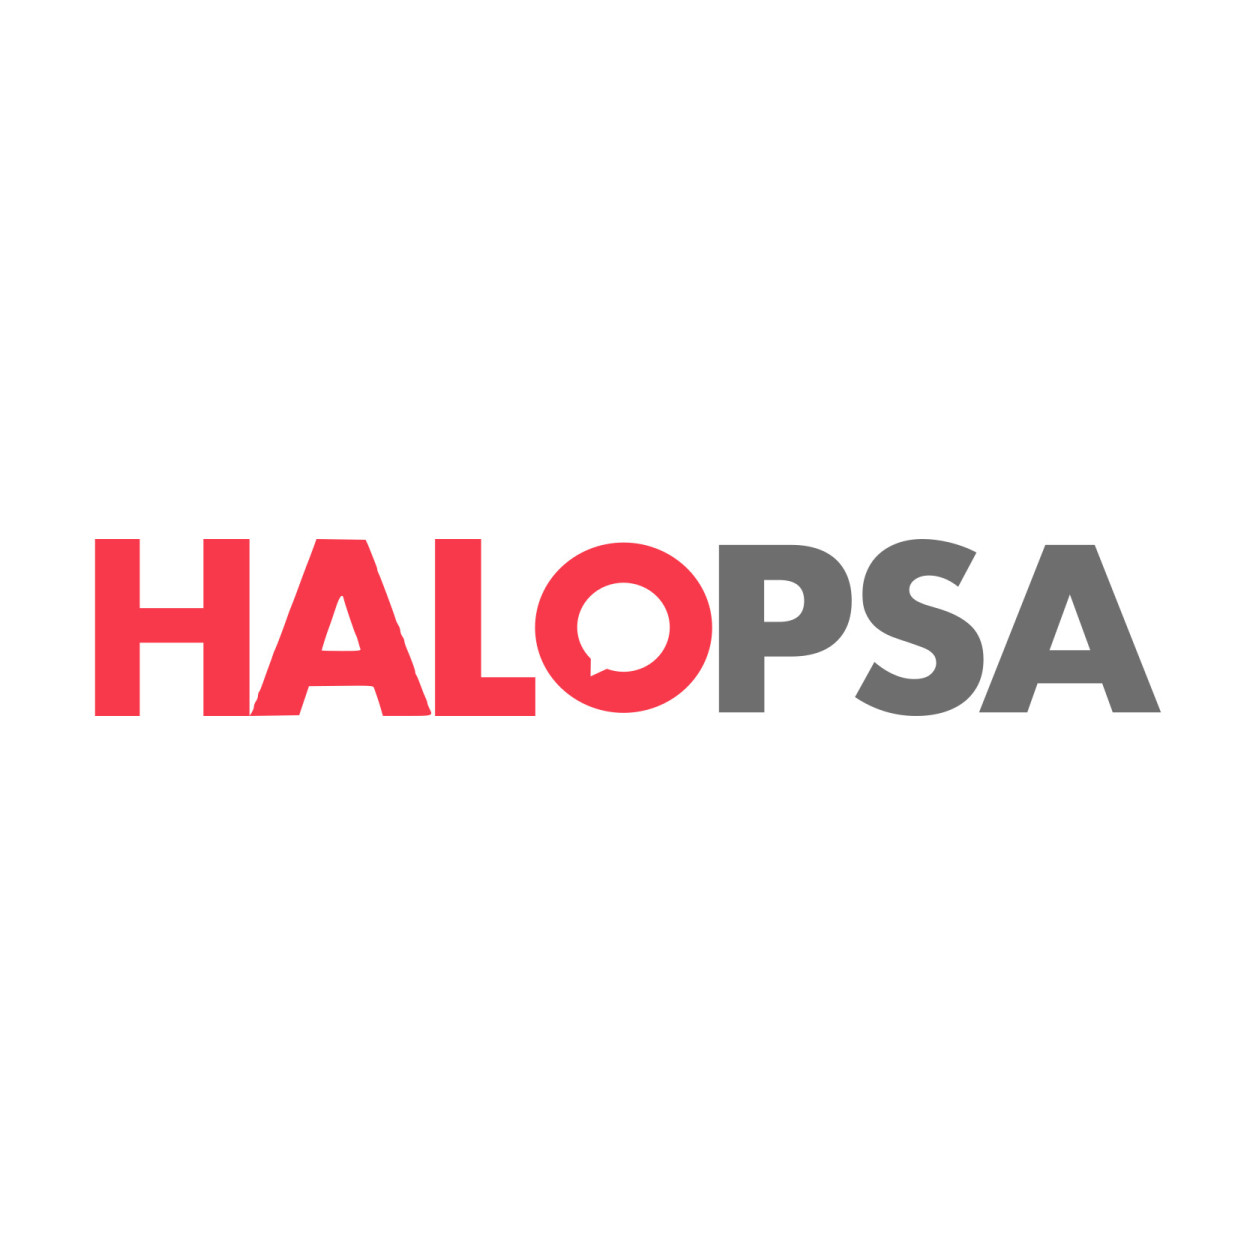 halopsa